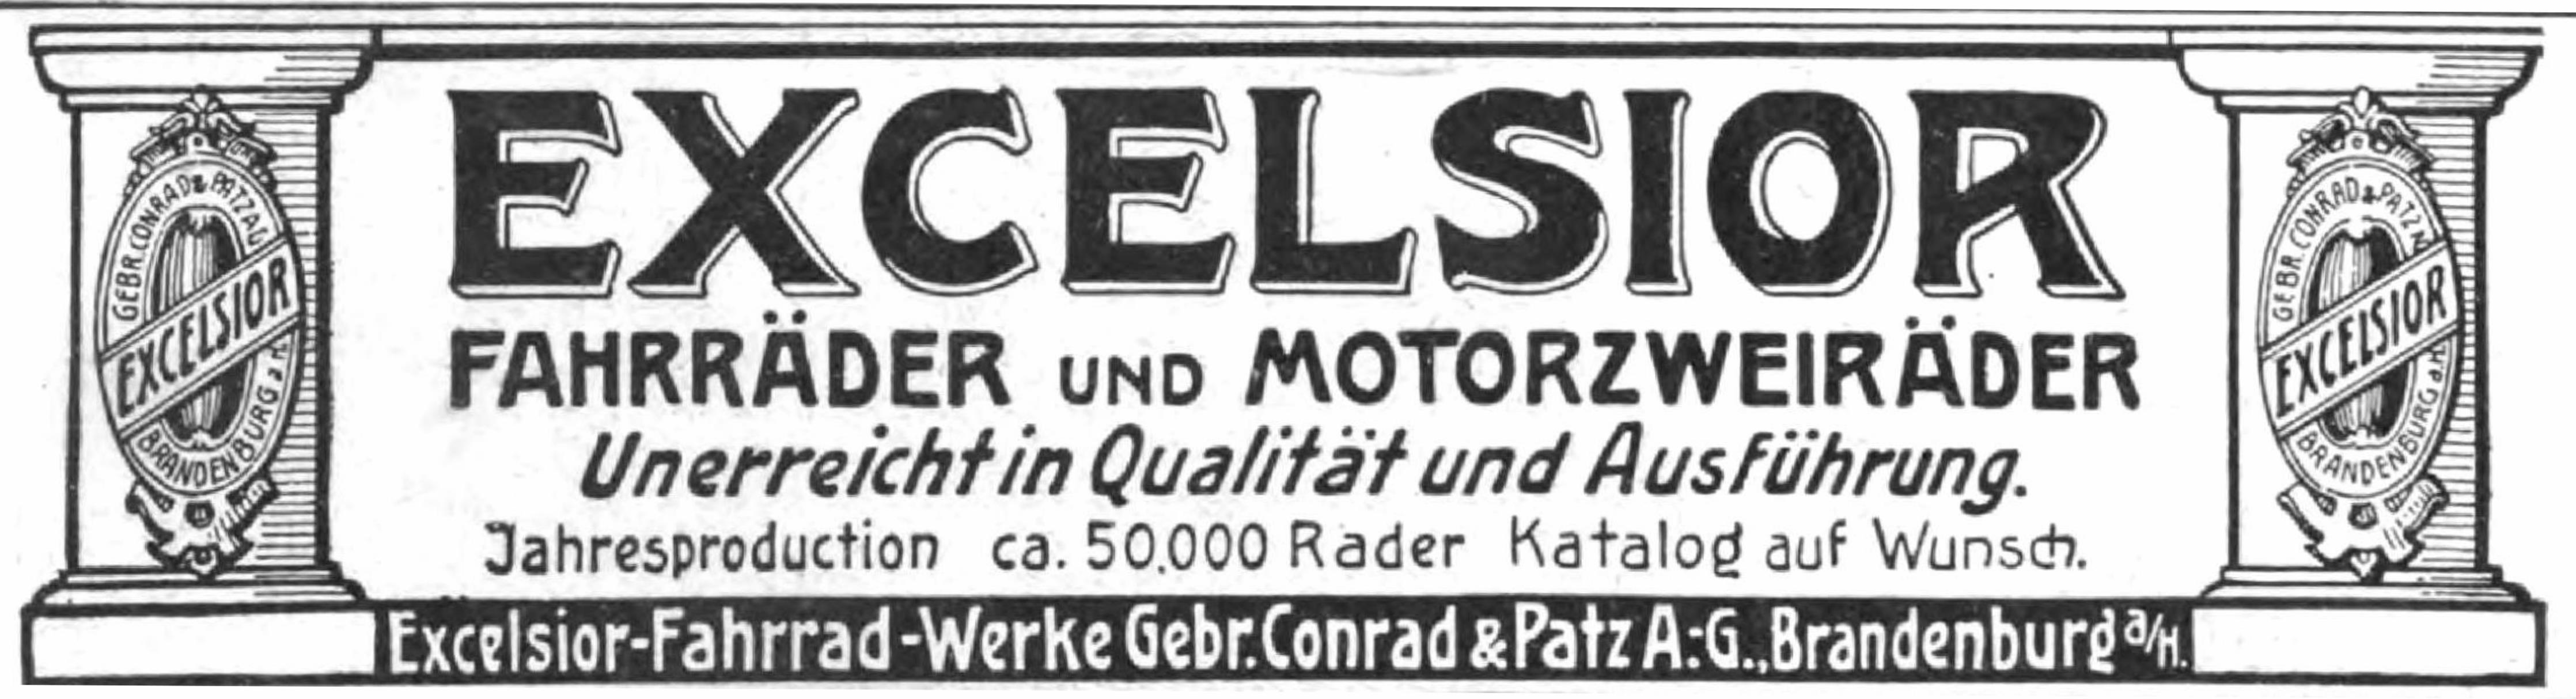 Excelsior 1907 484.jpg